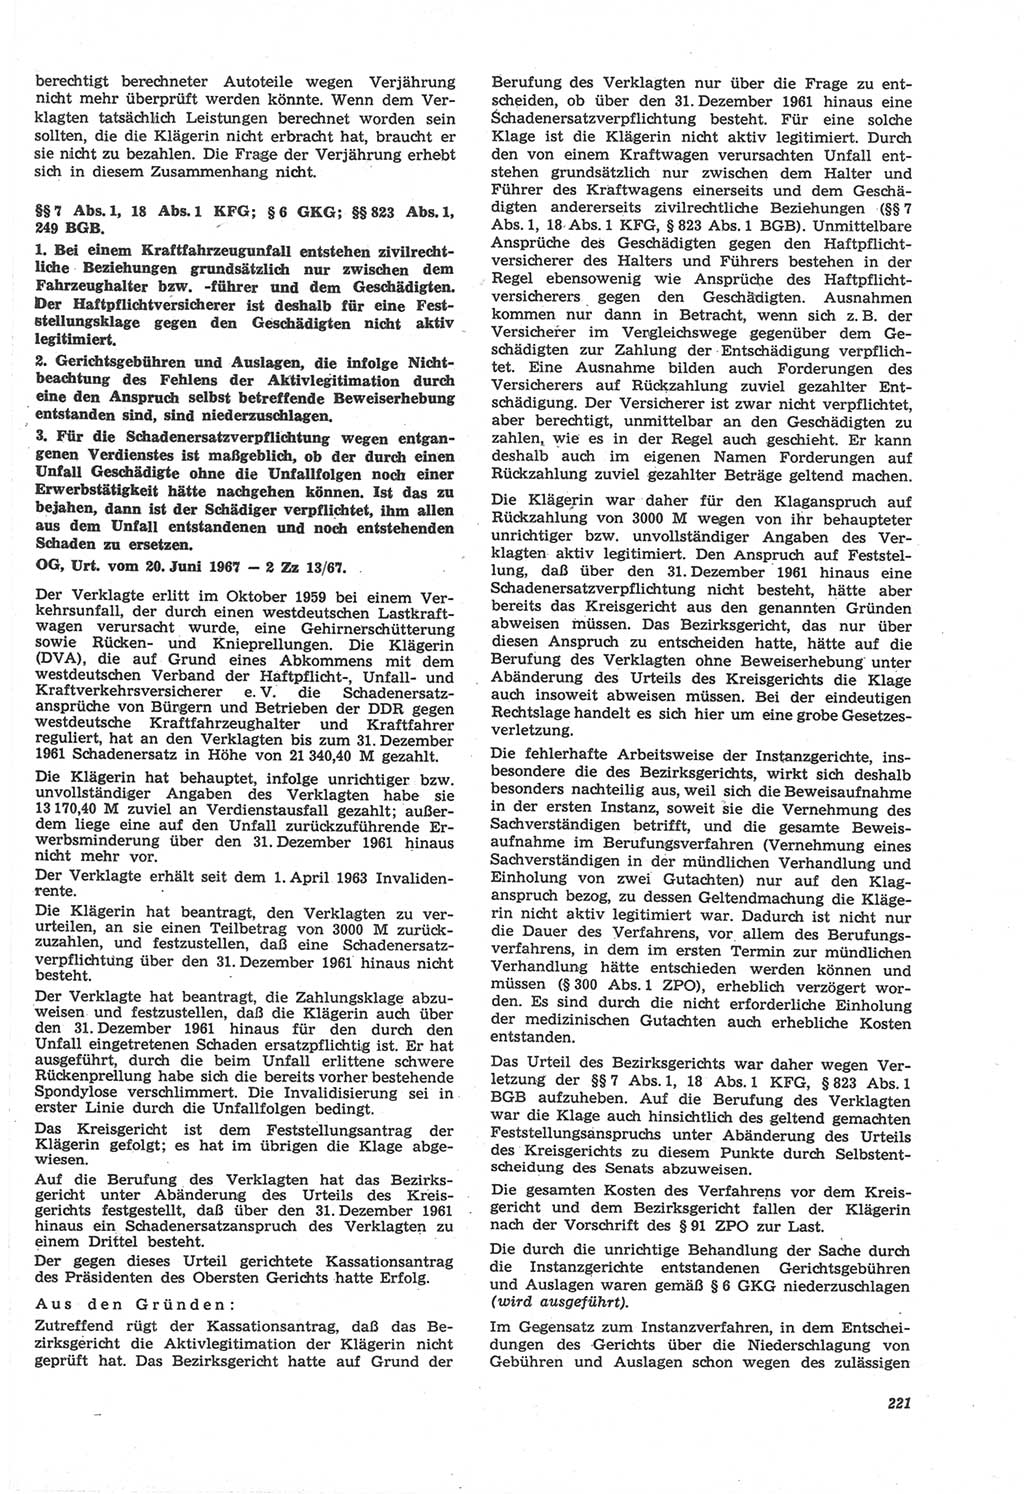 Neue Justiz (NJ), Zeitschrift für Recht und Rechtswissenschaft [Deutsche Demokratische Republik (DDR)], 22. Jahrgang 1968, Seite 221 (NJ DDR 1968, S. 221)